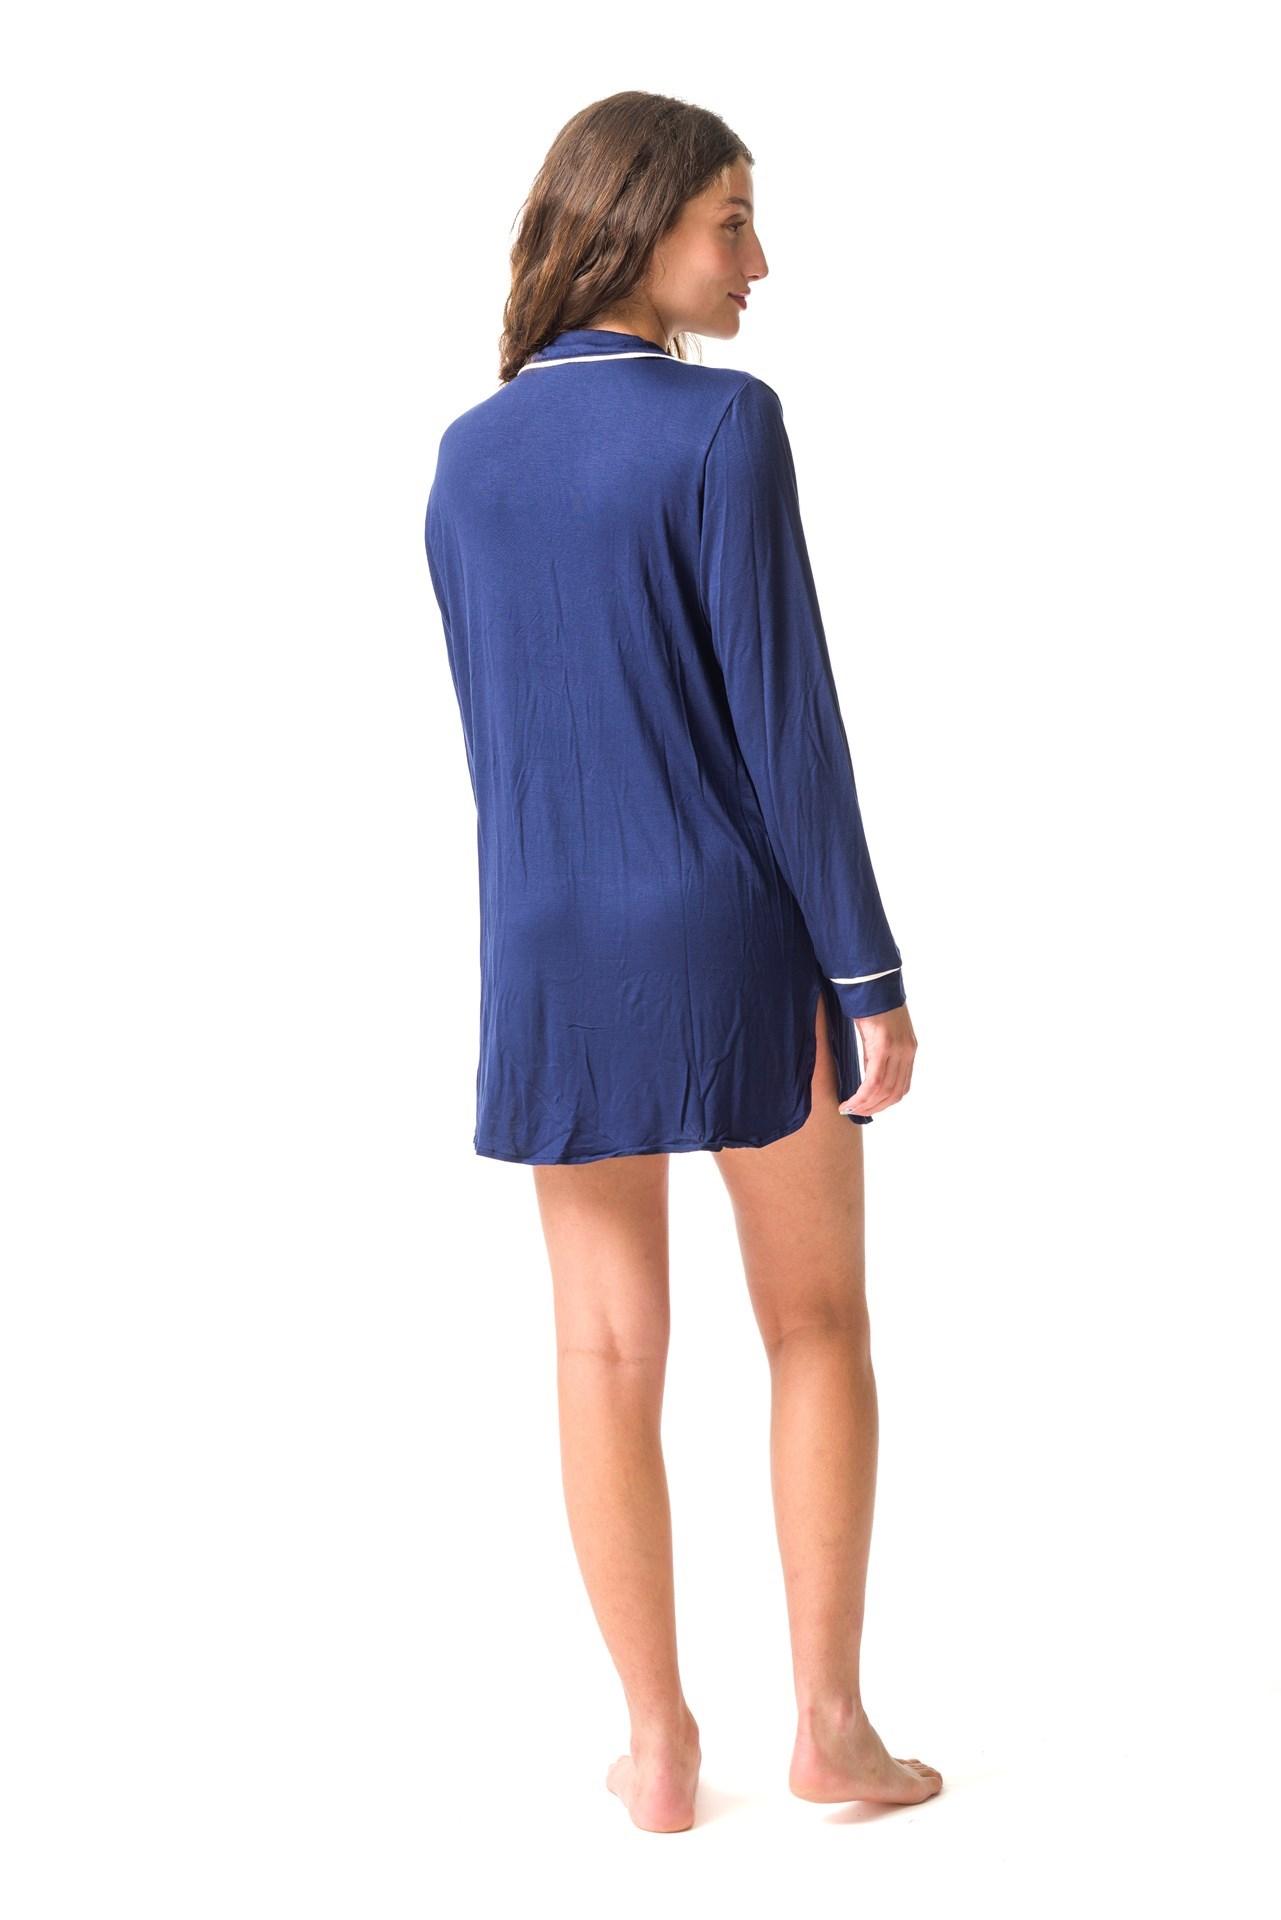 Francesca - Camisola de Modal azul s